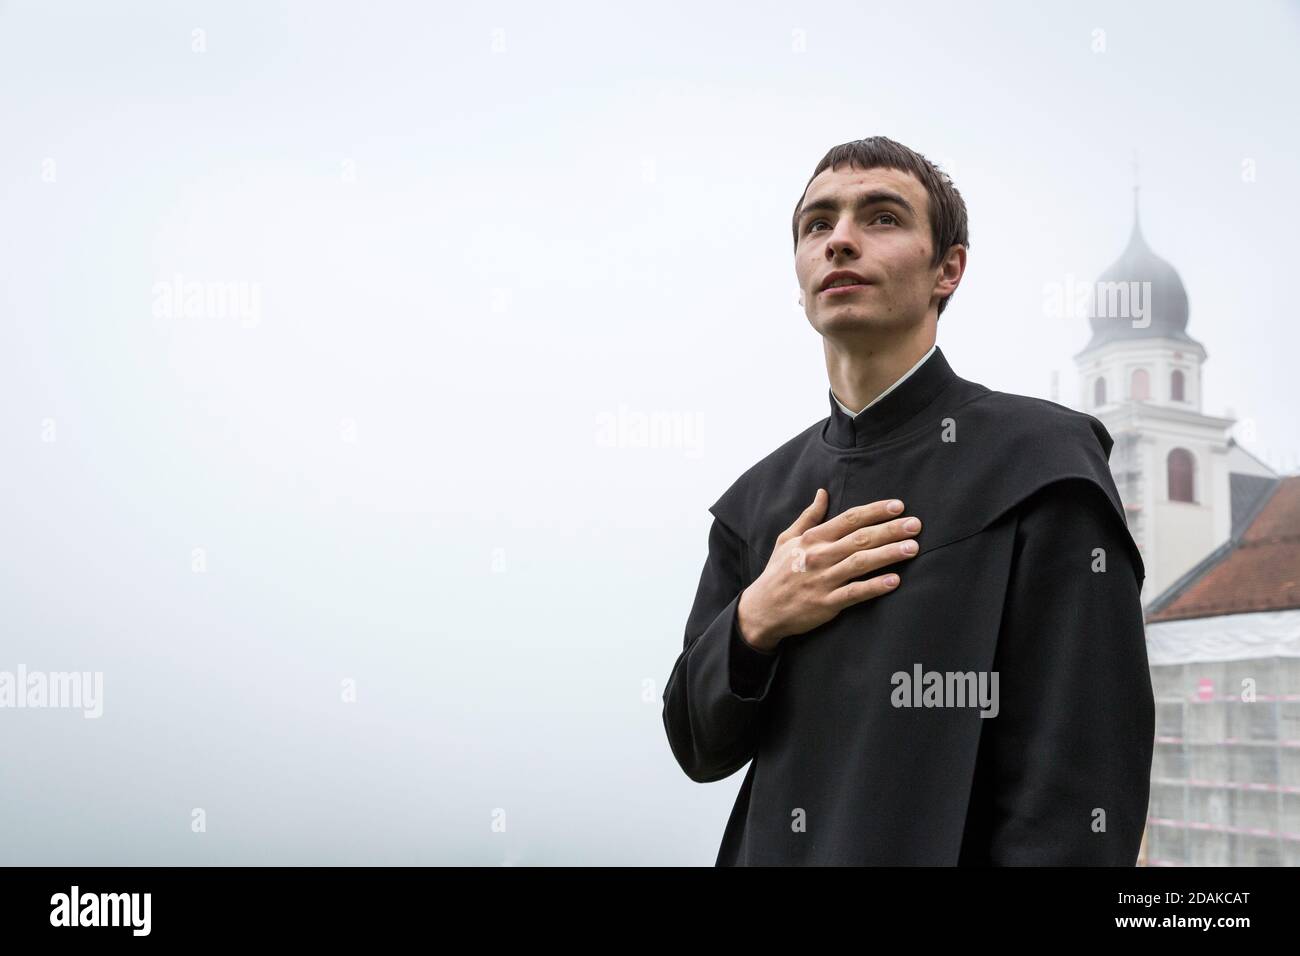 Bruder Morezi lebt und arbeitet als Mönch im Benediktinerkloster in  Disentis, Schweiz Stockfotografie - Alamy